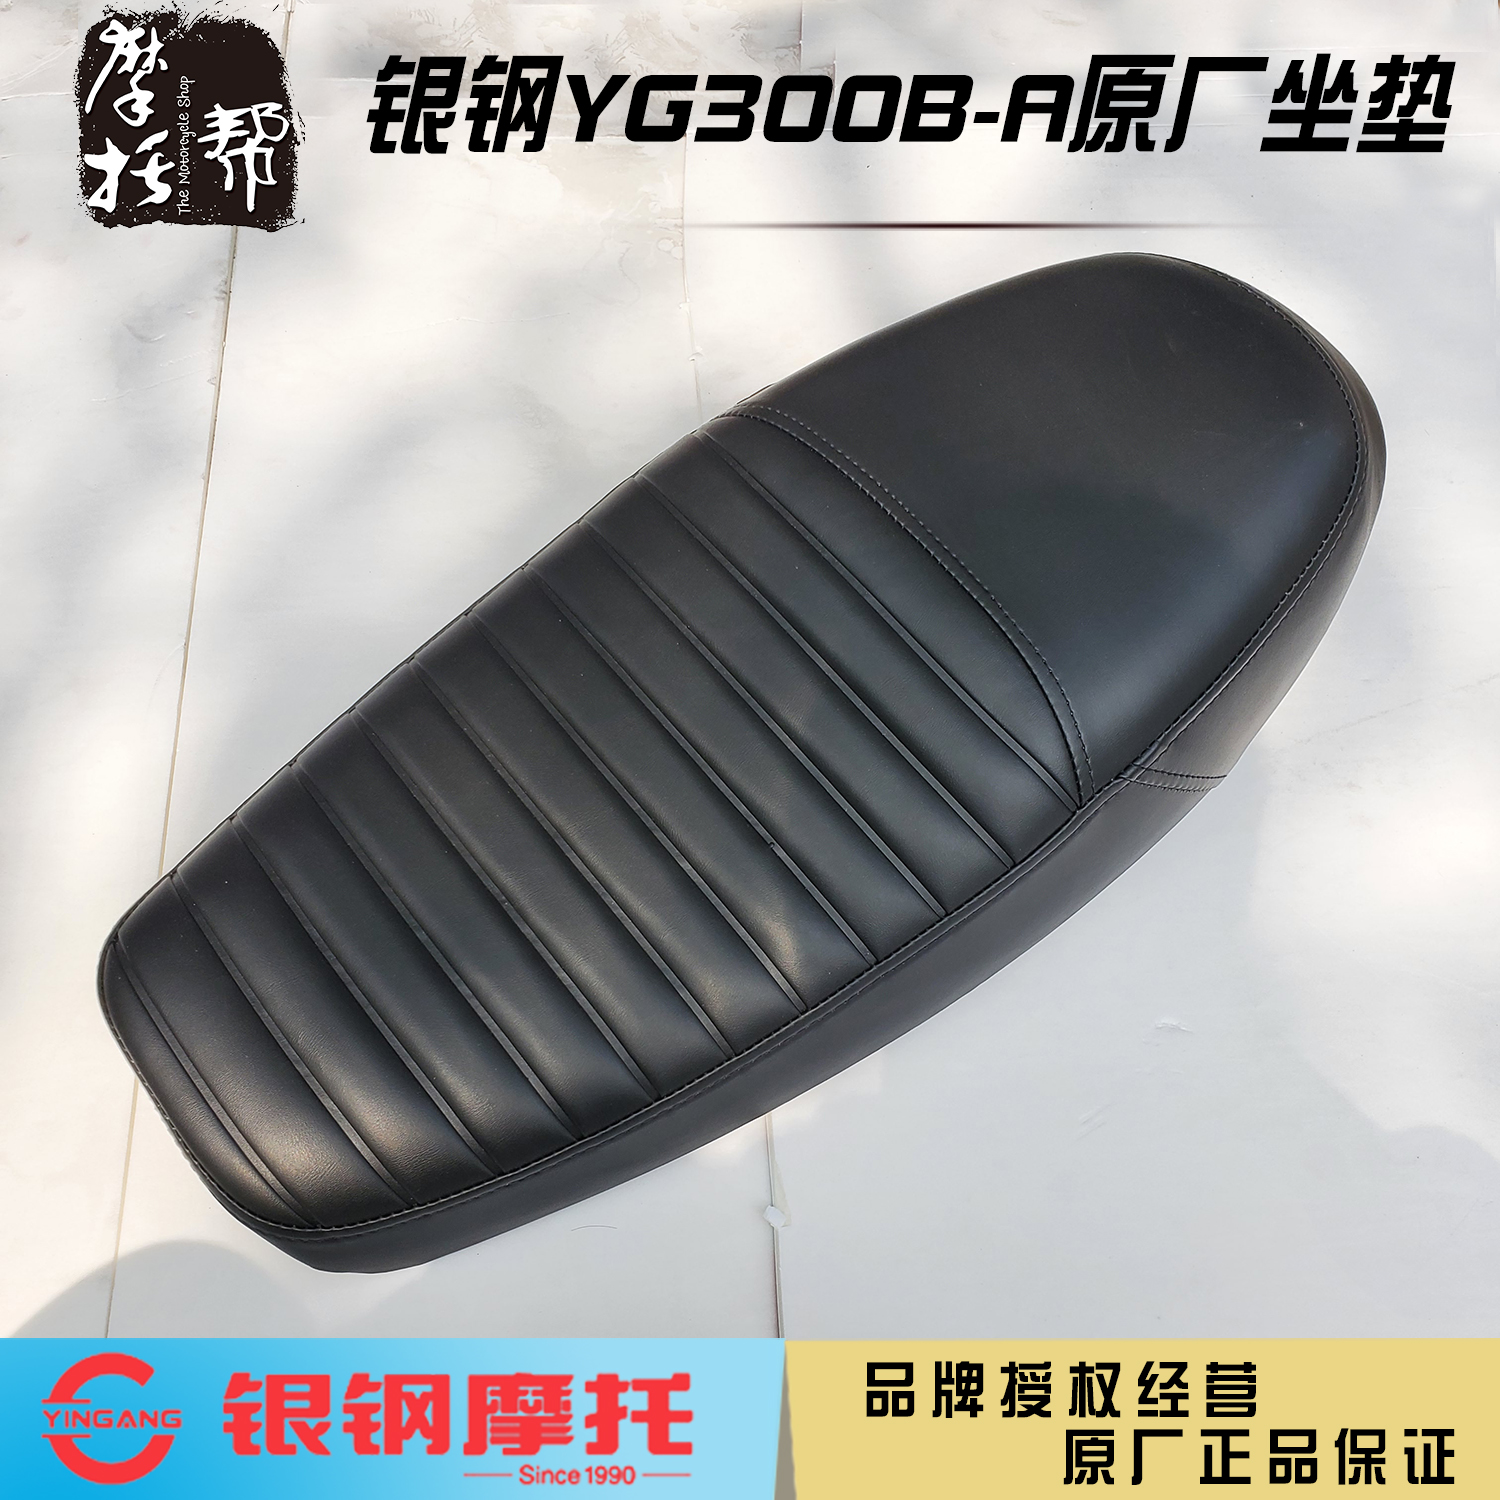 银钢国四铝轮边三轮YG300B-A大油箱版本原厂配件黑色坐垫复古座垫